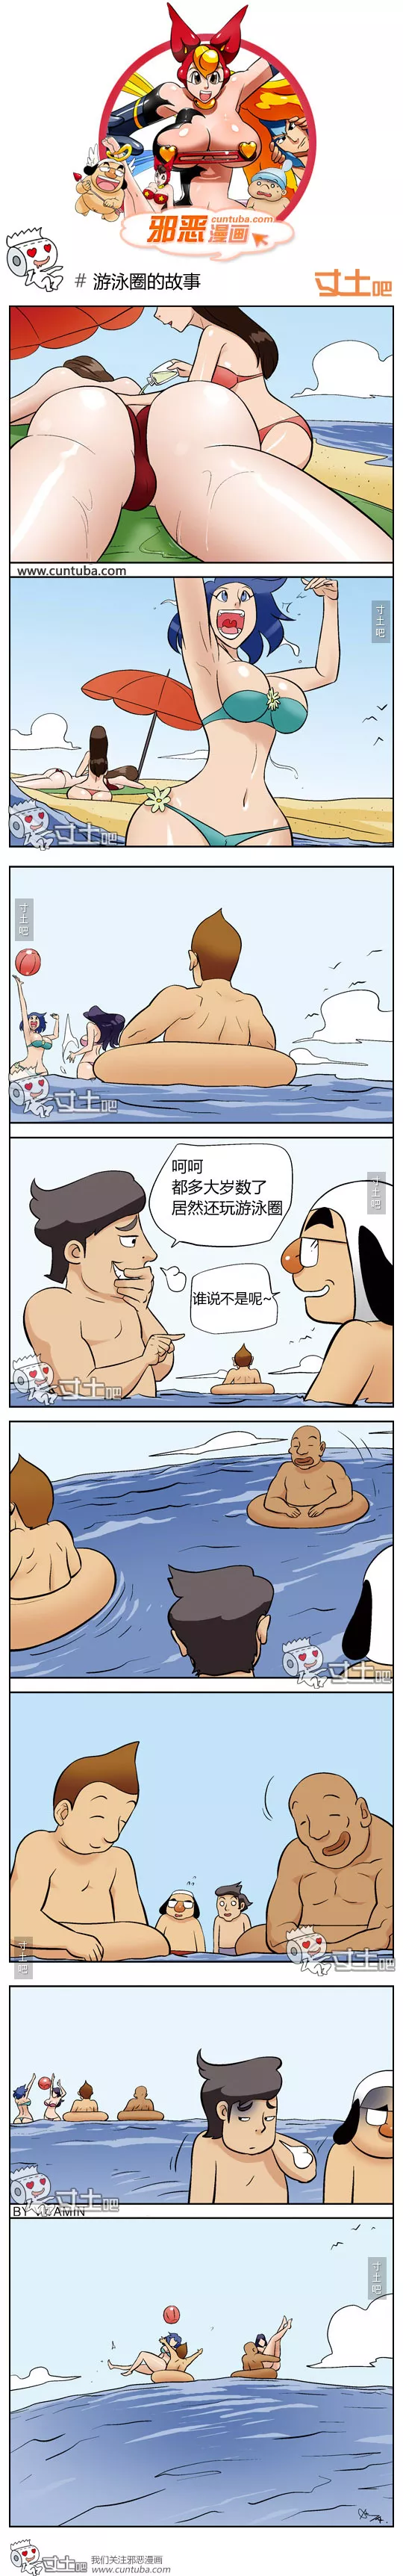 色小组：游泳圈的故事 绅士漫画 绅士全彩漫画